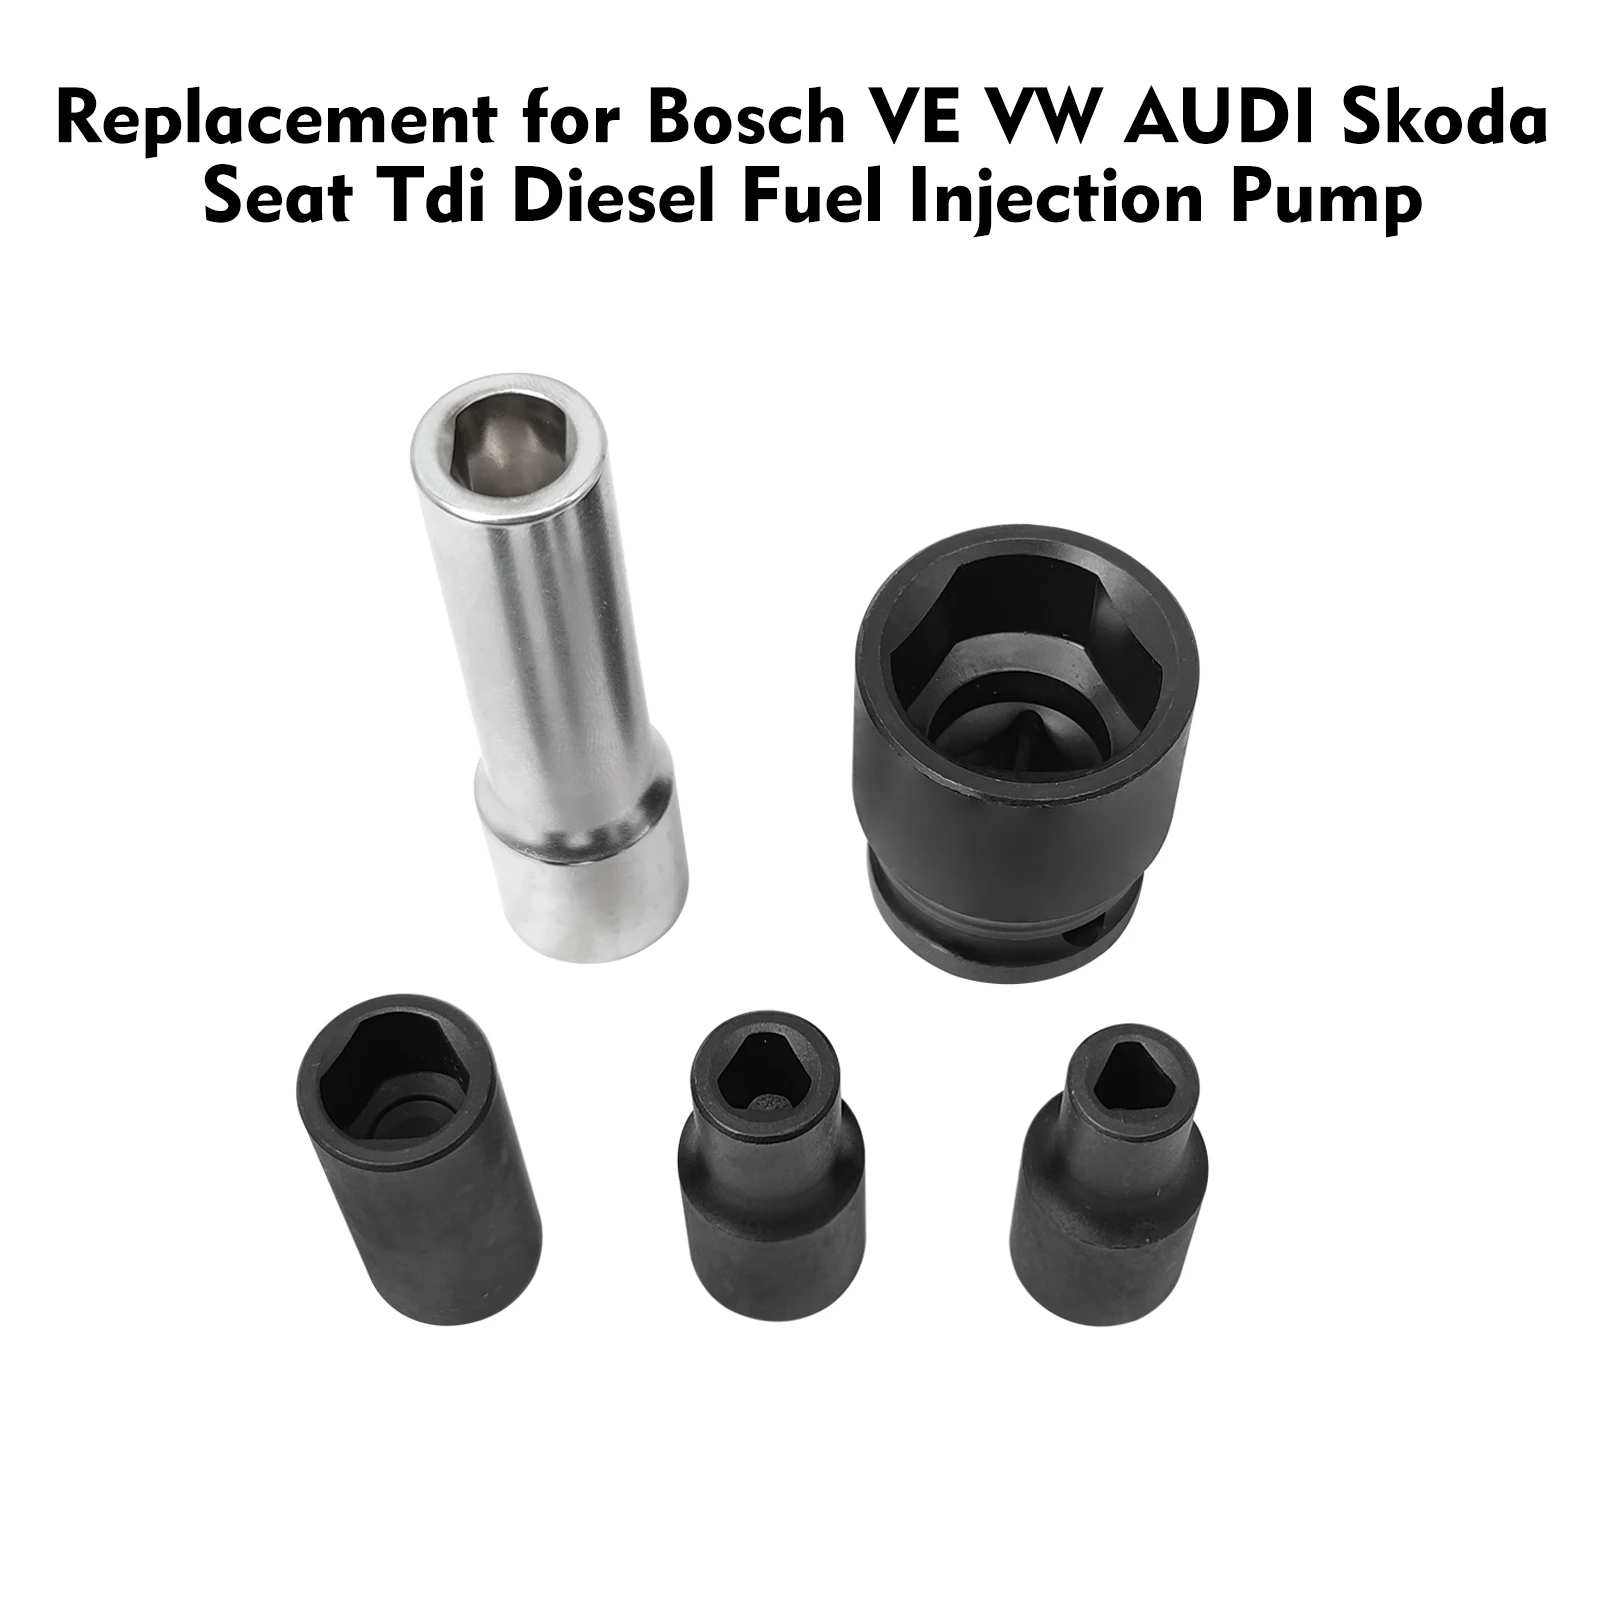 דיזל משאבת תיקונים סט כלי דלק חיישן טמפרטורה מסיר תחליף Bosch VE פולקסווגן אאודי סקודה המושב Tdi דיזל הזרקה - 1